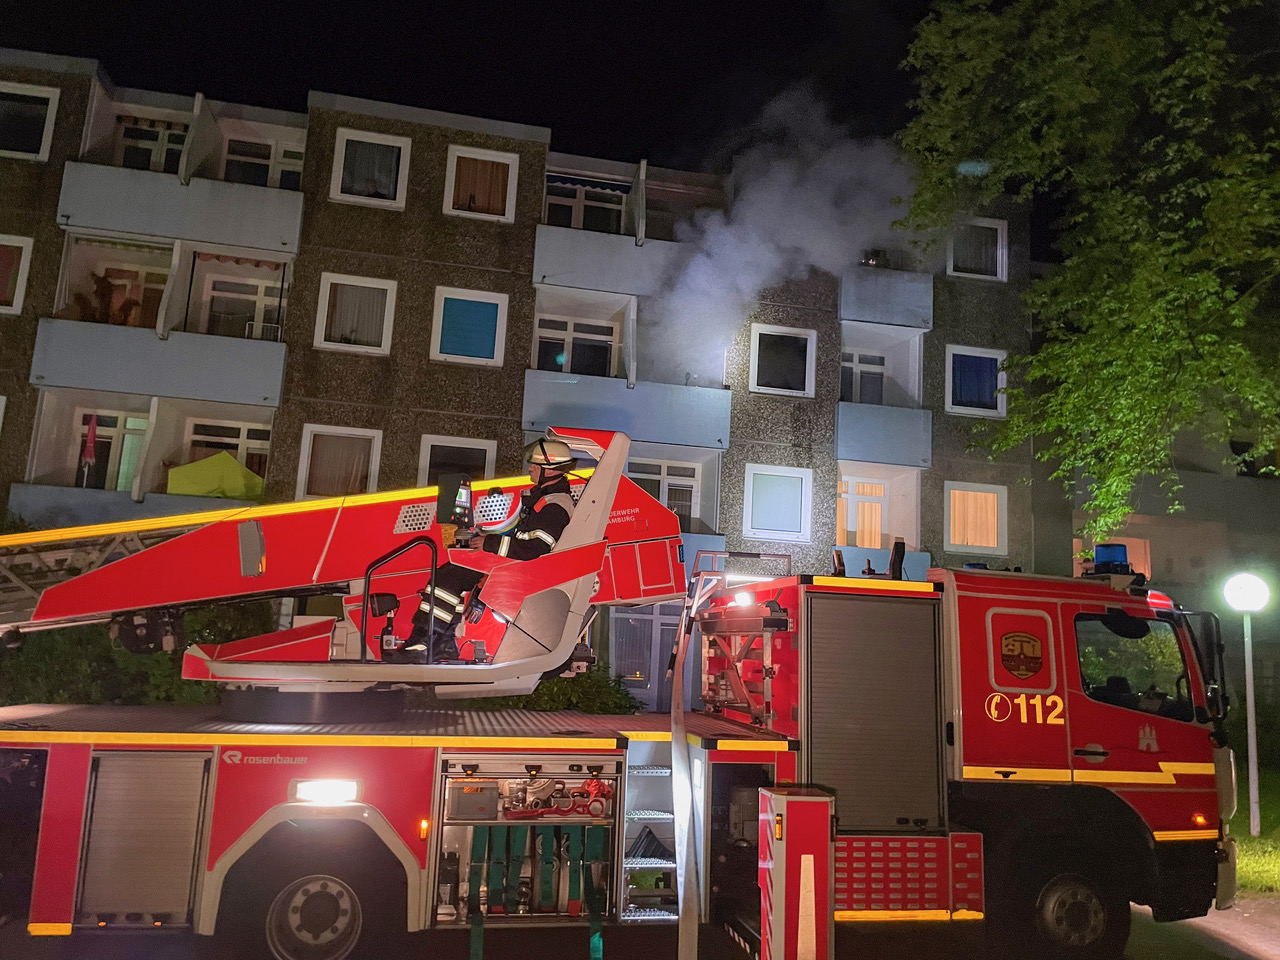 Bei Wohnungsbrand in Hamburg – Feuerwehrmänner finden tote Person